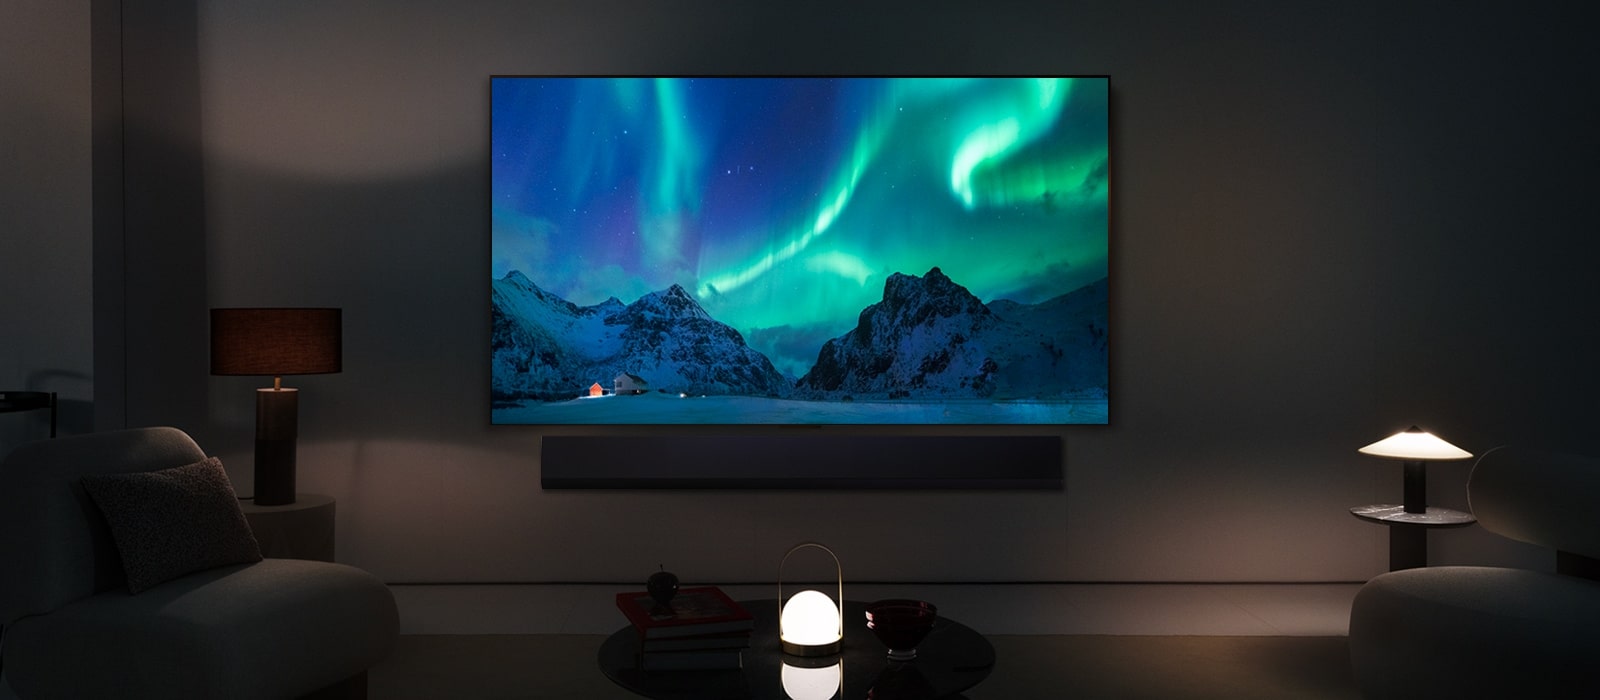 يظهر تلفزيون LG OLED TV ومكبر الصوت LG Soundbar في غرفة معيشة عصرية في وضح النهار. يتم عرض صورة الشفق القطبي على الشاشة بمستويات السطوع المثالية.